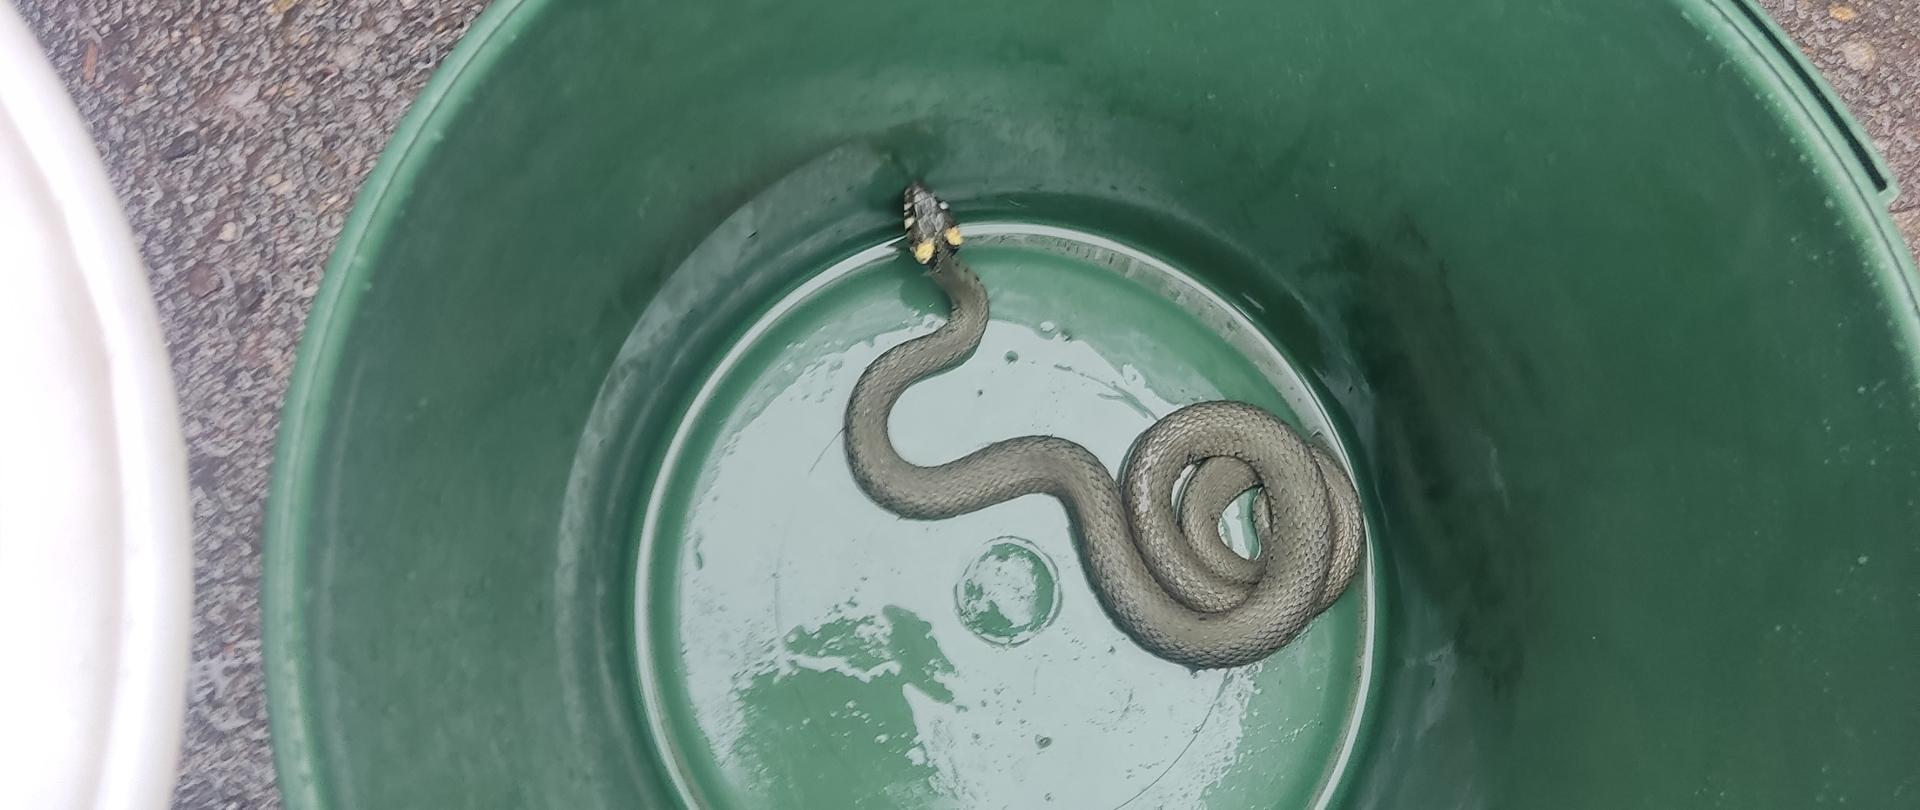 Zielne wiaderko z tworzywa sztucznego. W środku wąż. Zdjęcie wykonane w ciągu dnia.